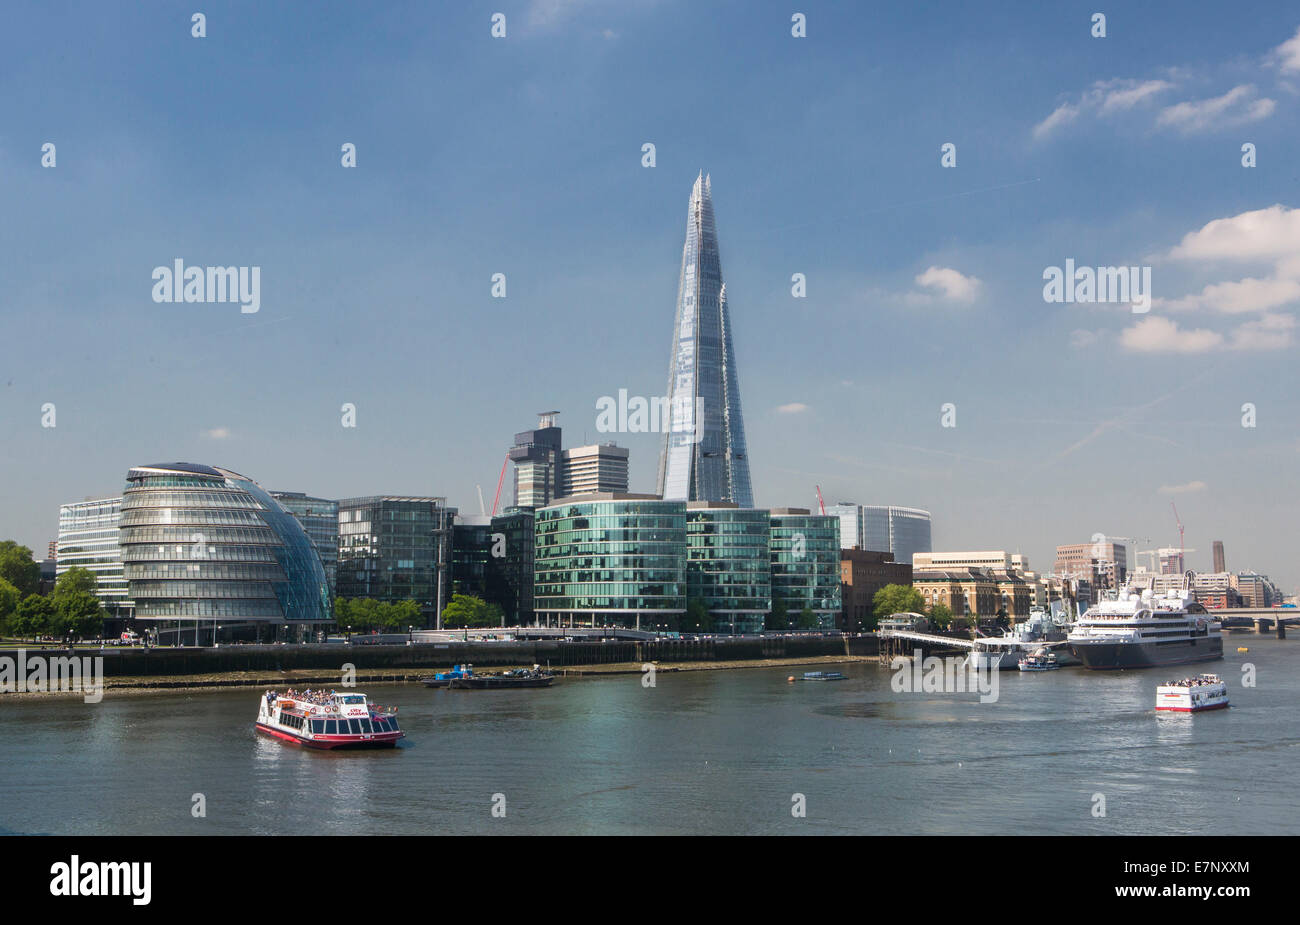 La construcción, de la ciudad, City Hall, Londres, Inglaterra, Shard, UK, arquitectura, barco nuevo, el río Támesis, el río, el turismo, la torre, viajes, Mo Foto de stock